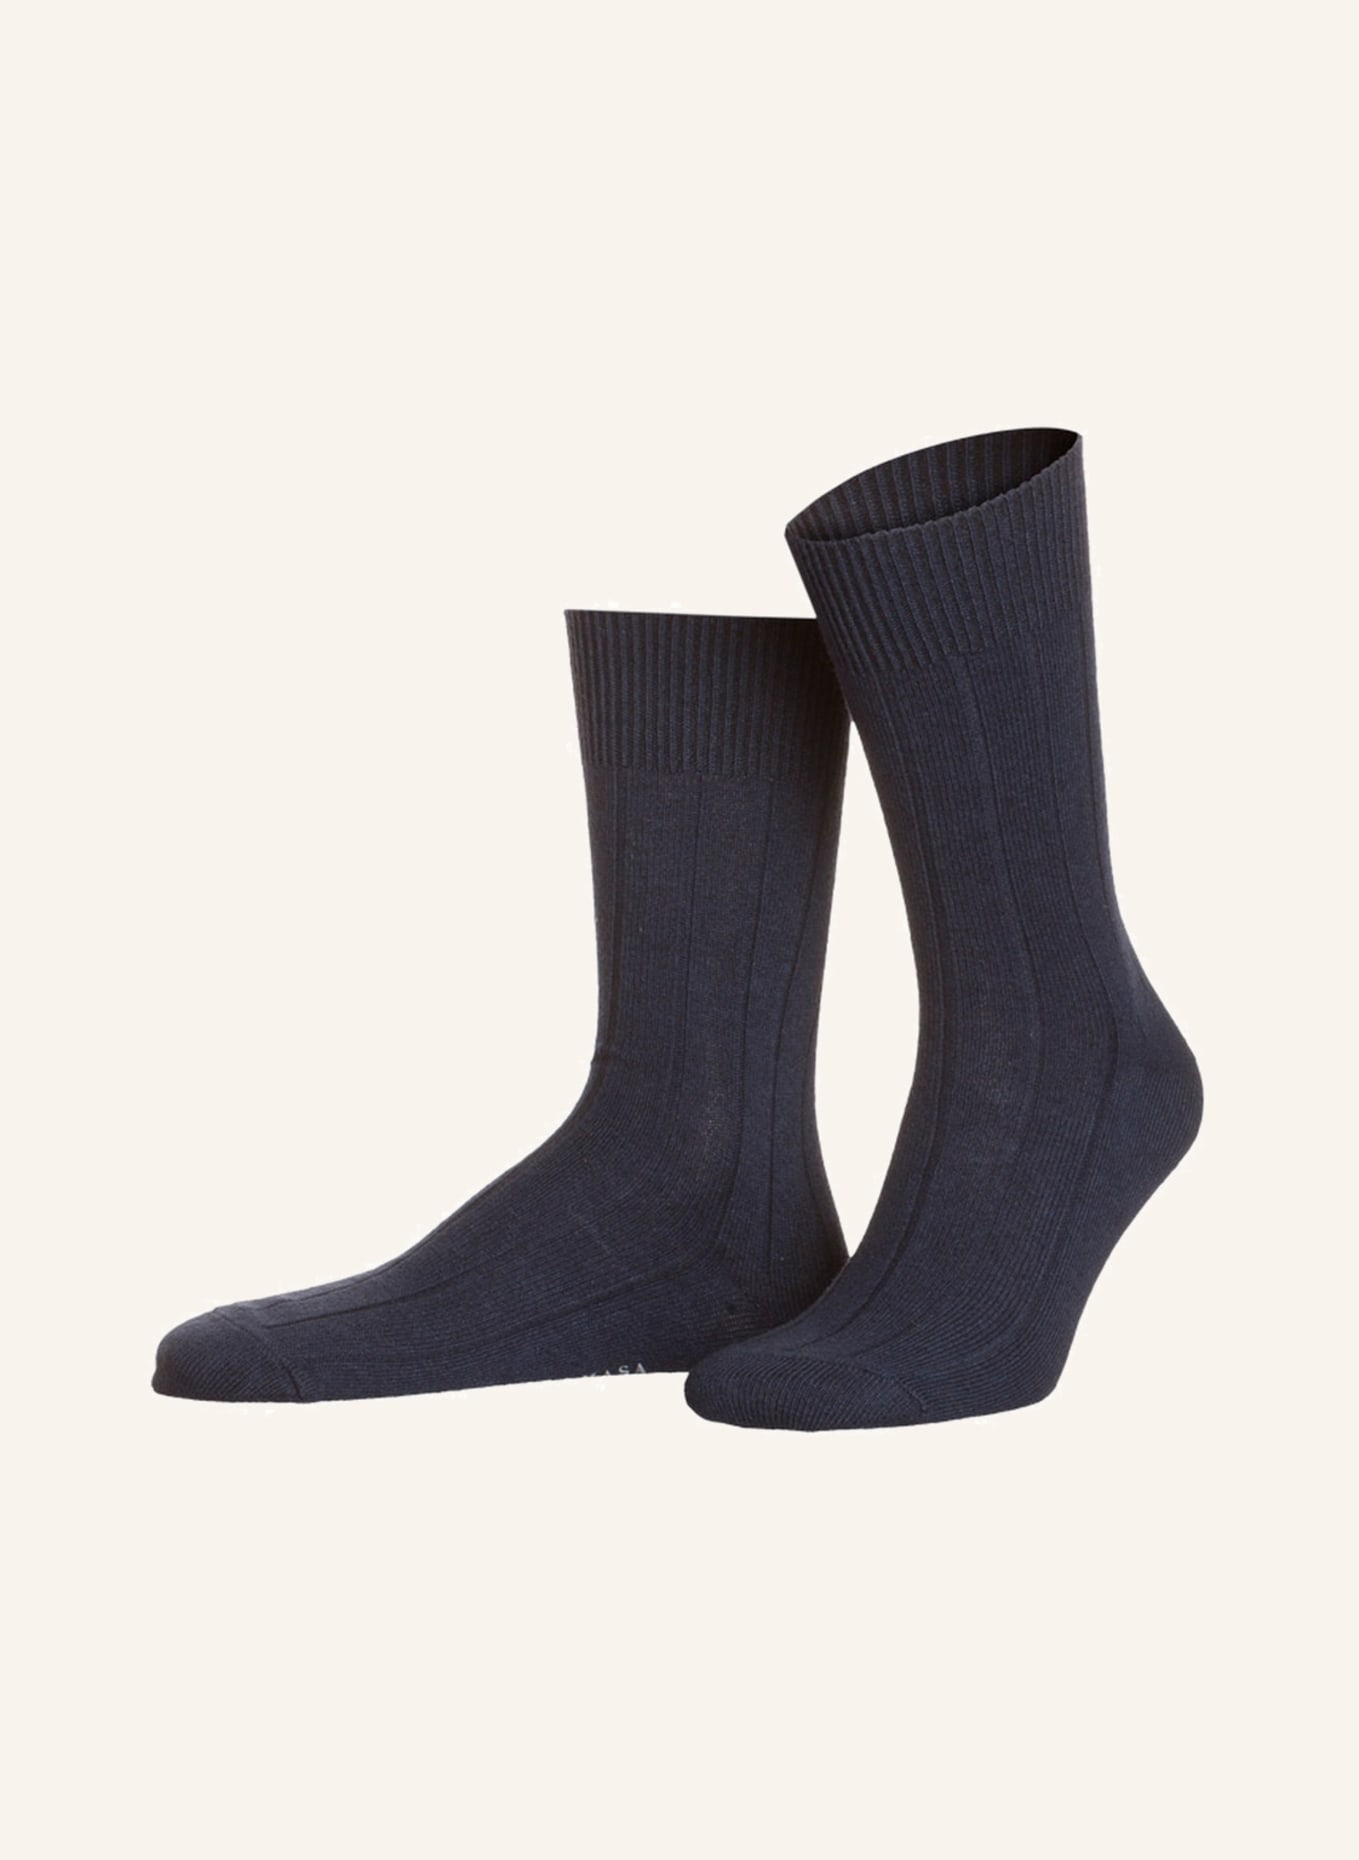 FALKE Socken LHASA, Farbe: 6370 DARK BLUE (Bild 1)